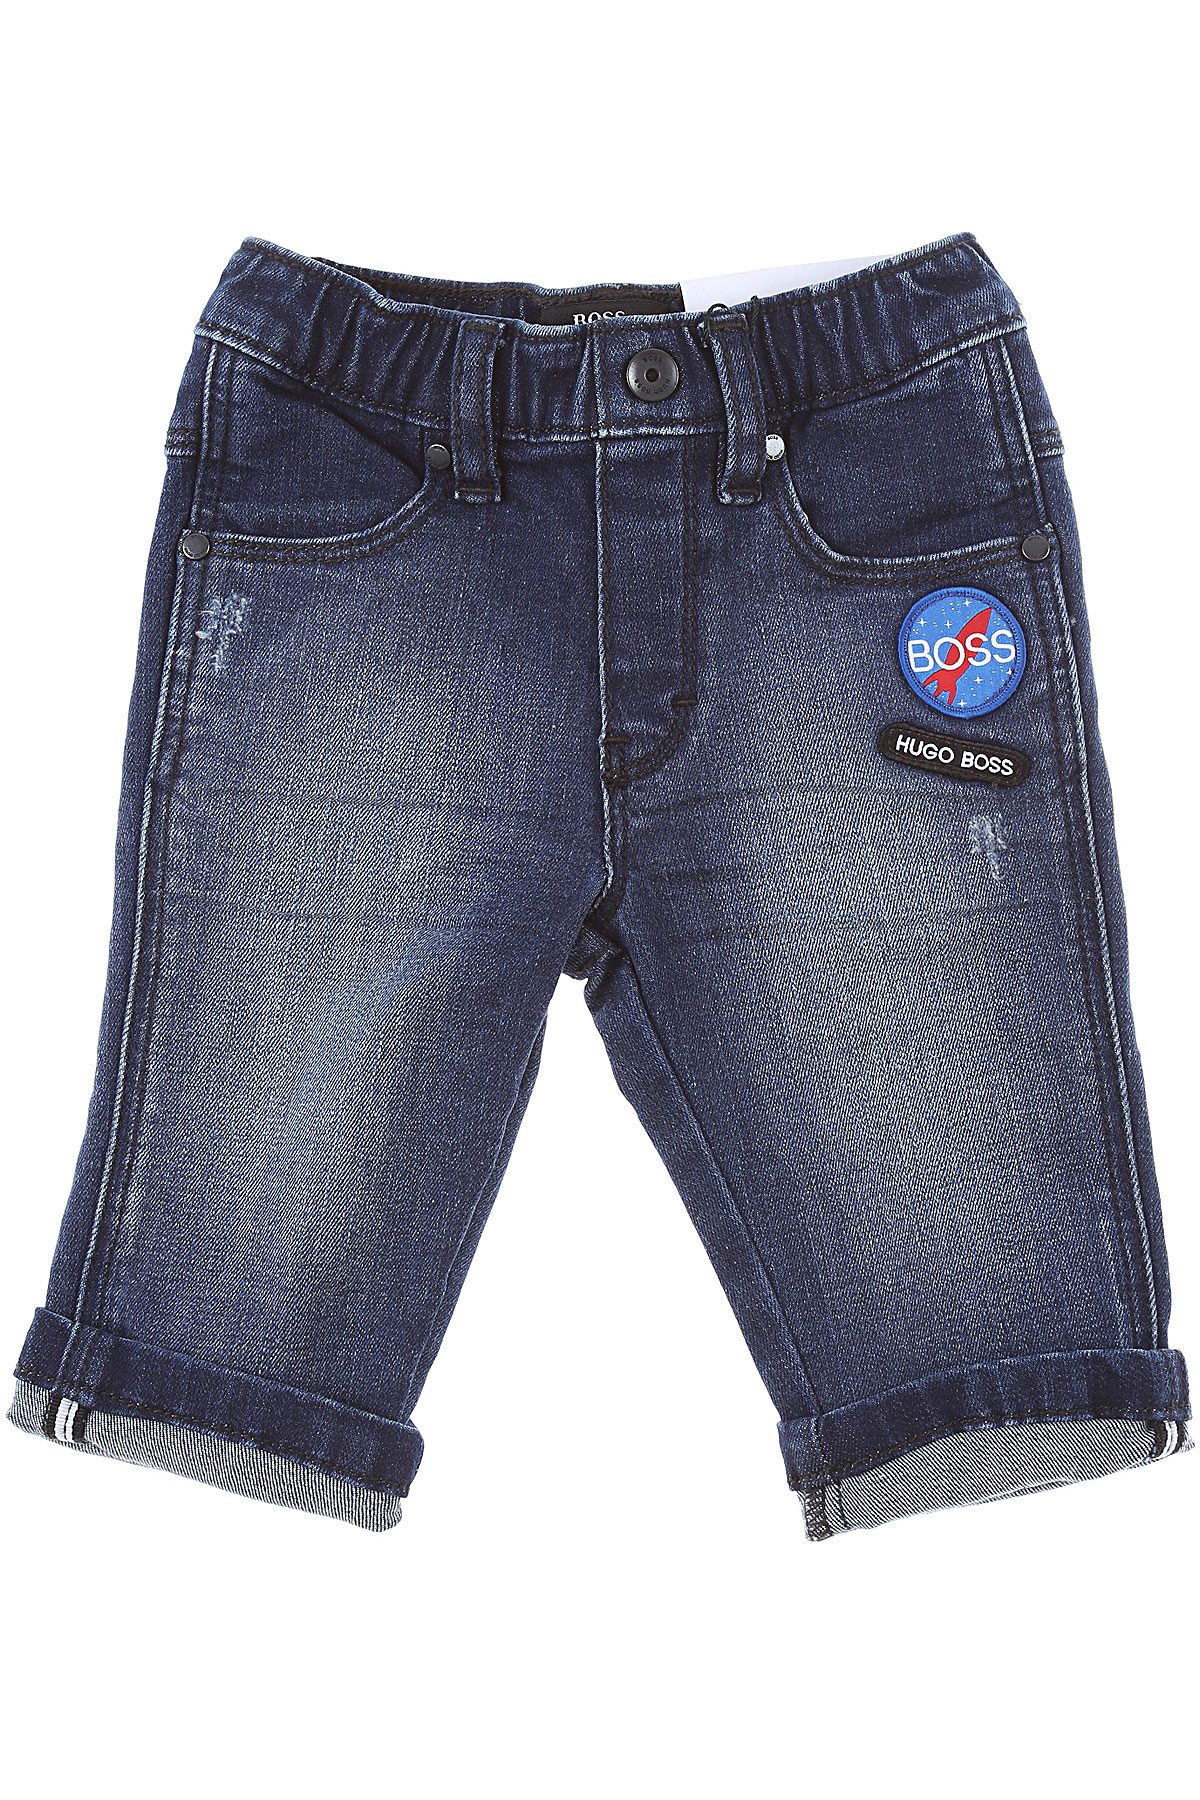 Hugo Boss Baby Jeans für Jungen Günstig im Sale, Denim Blau, Baumwolle, 2017, 12 M 18 M 2Y 3Y 6M 9 M